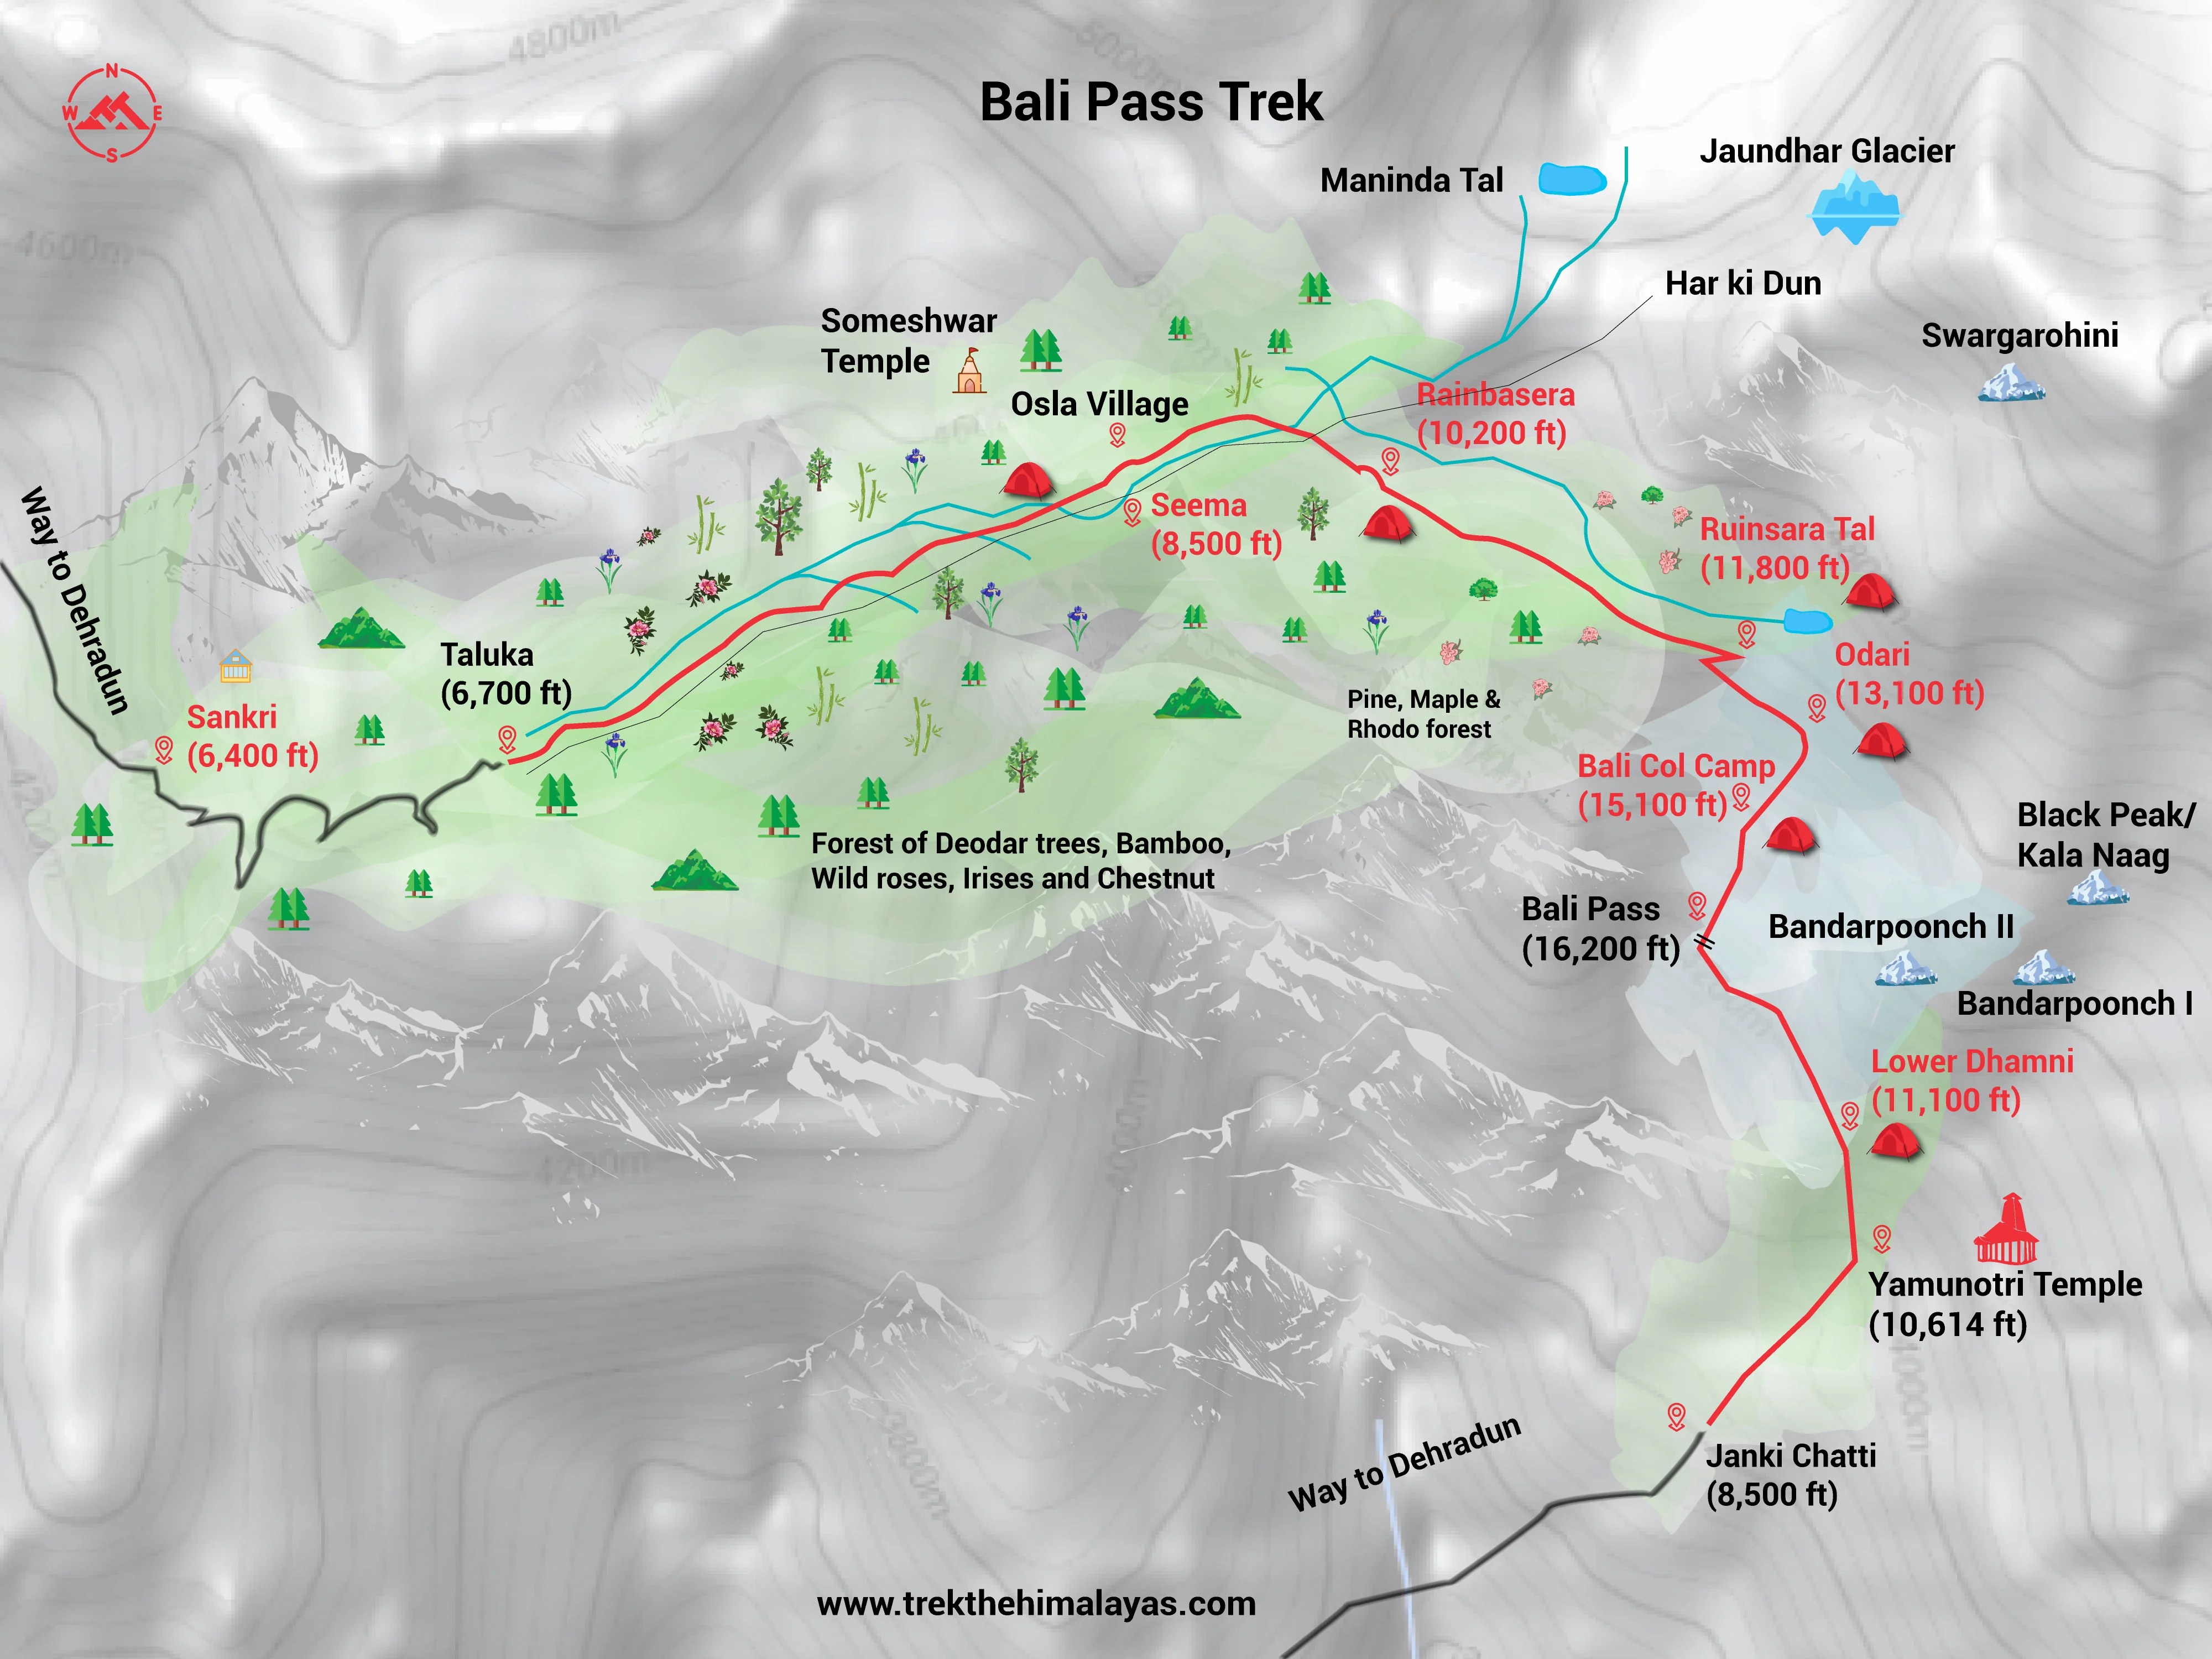 Bali Pass Trek Maps